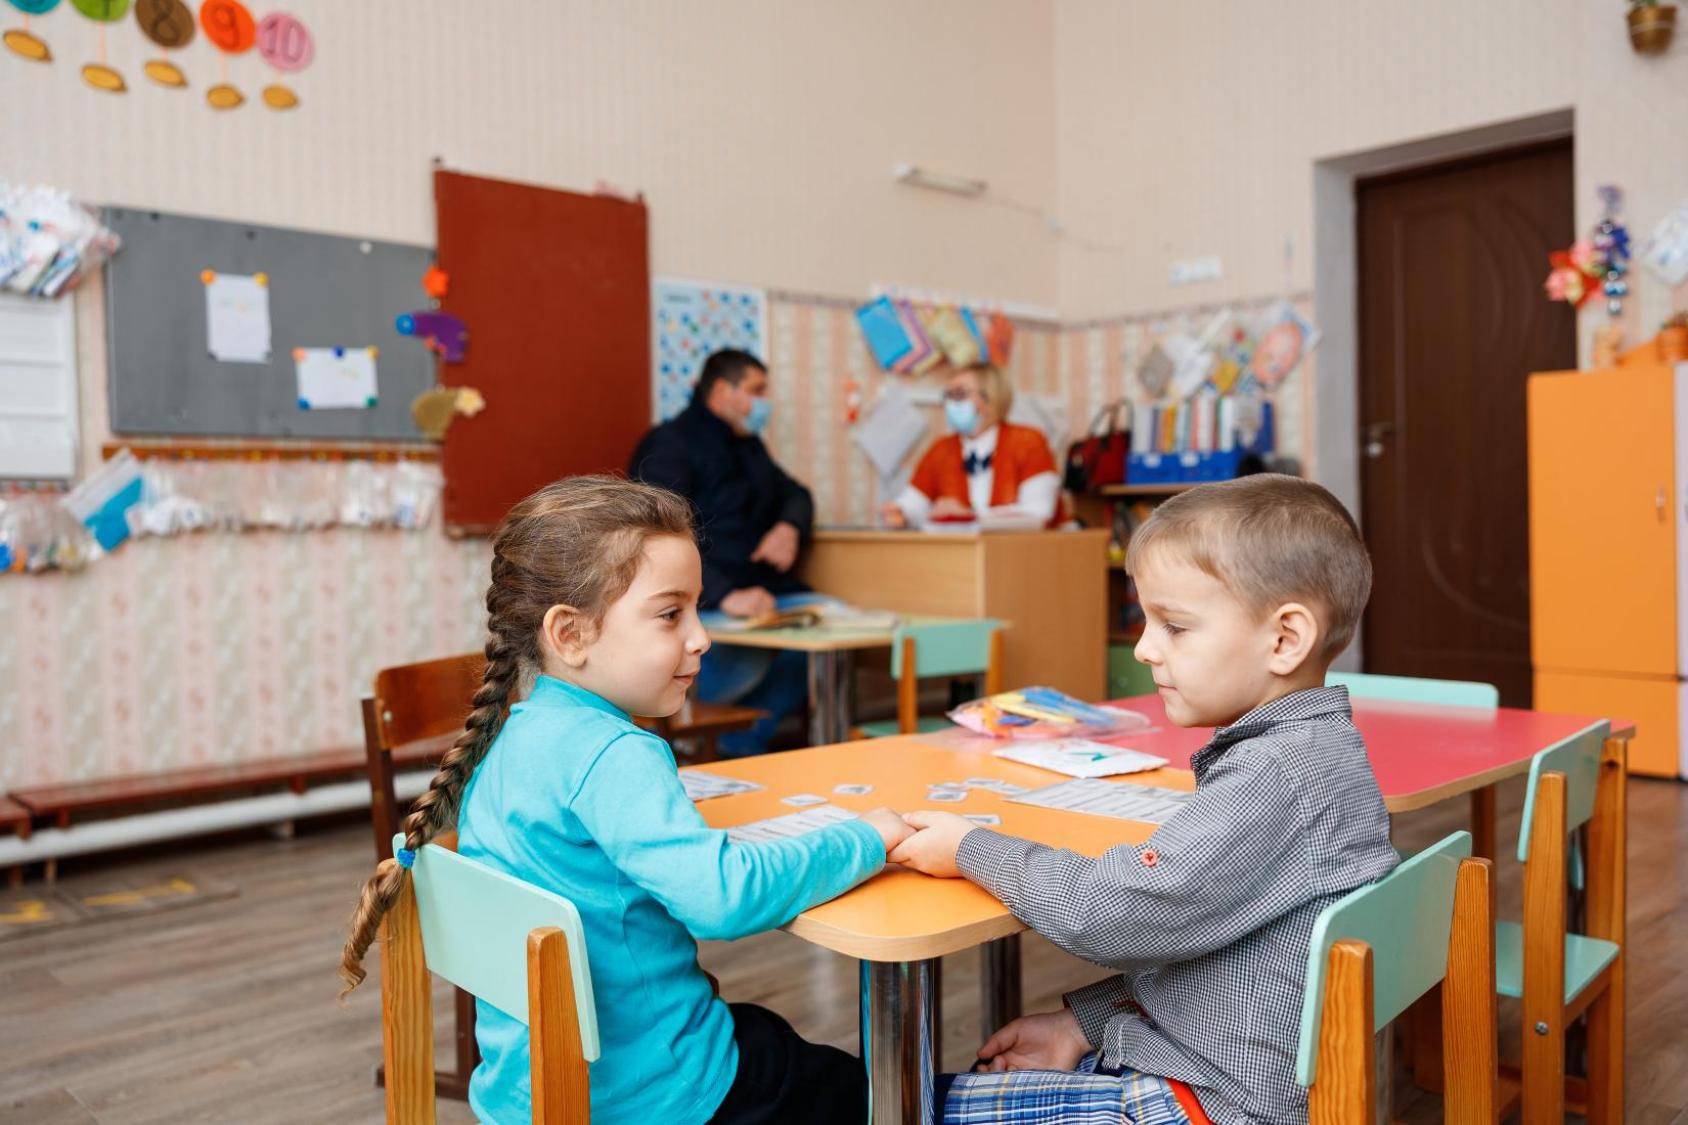 طفلان صغيران يجلسان على طاولة في فصل دراسي.